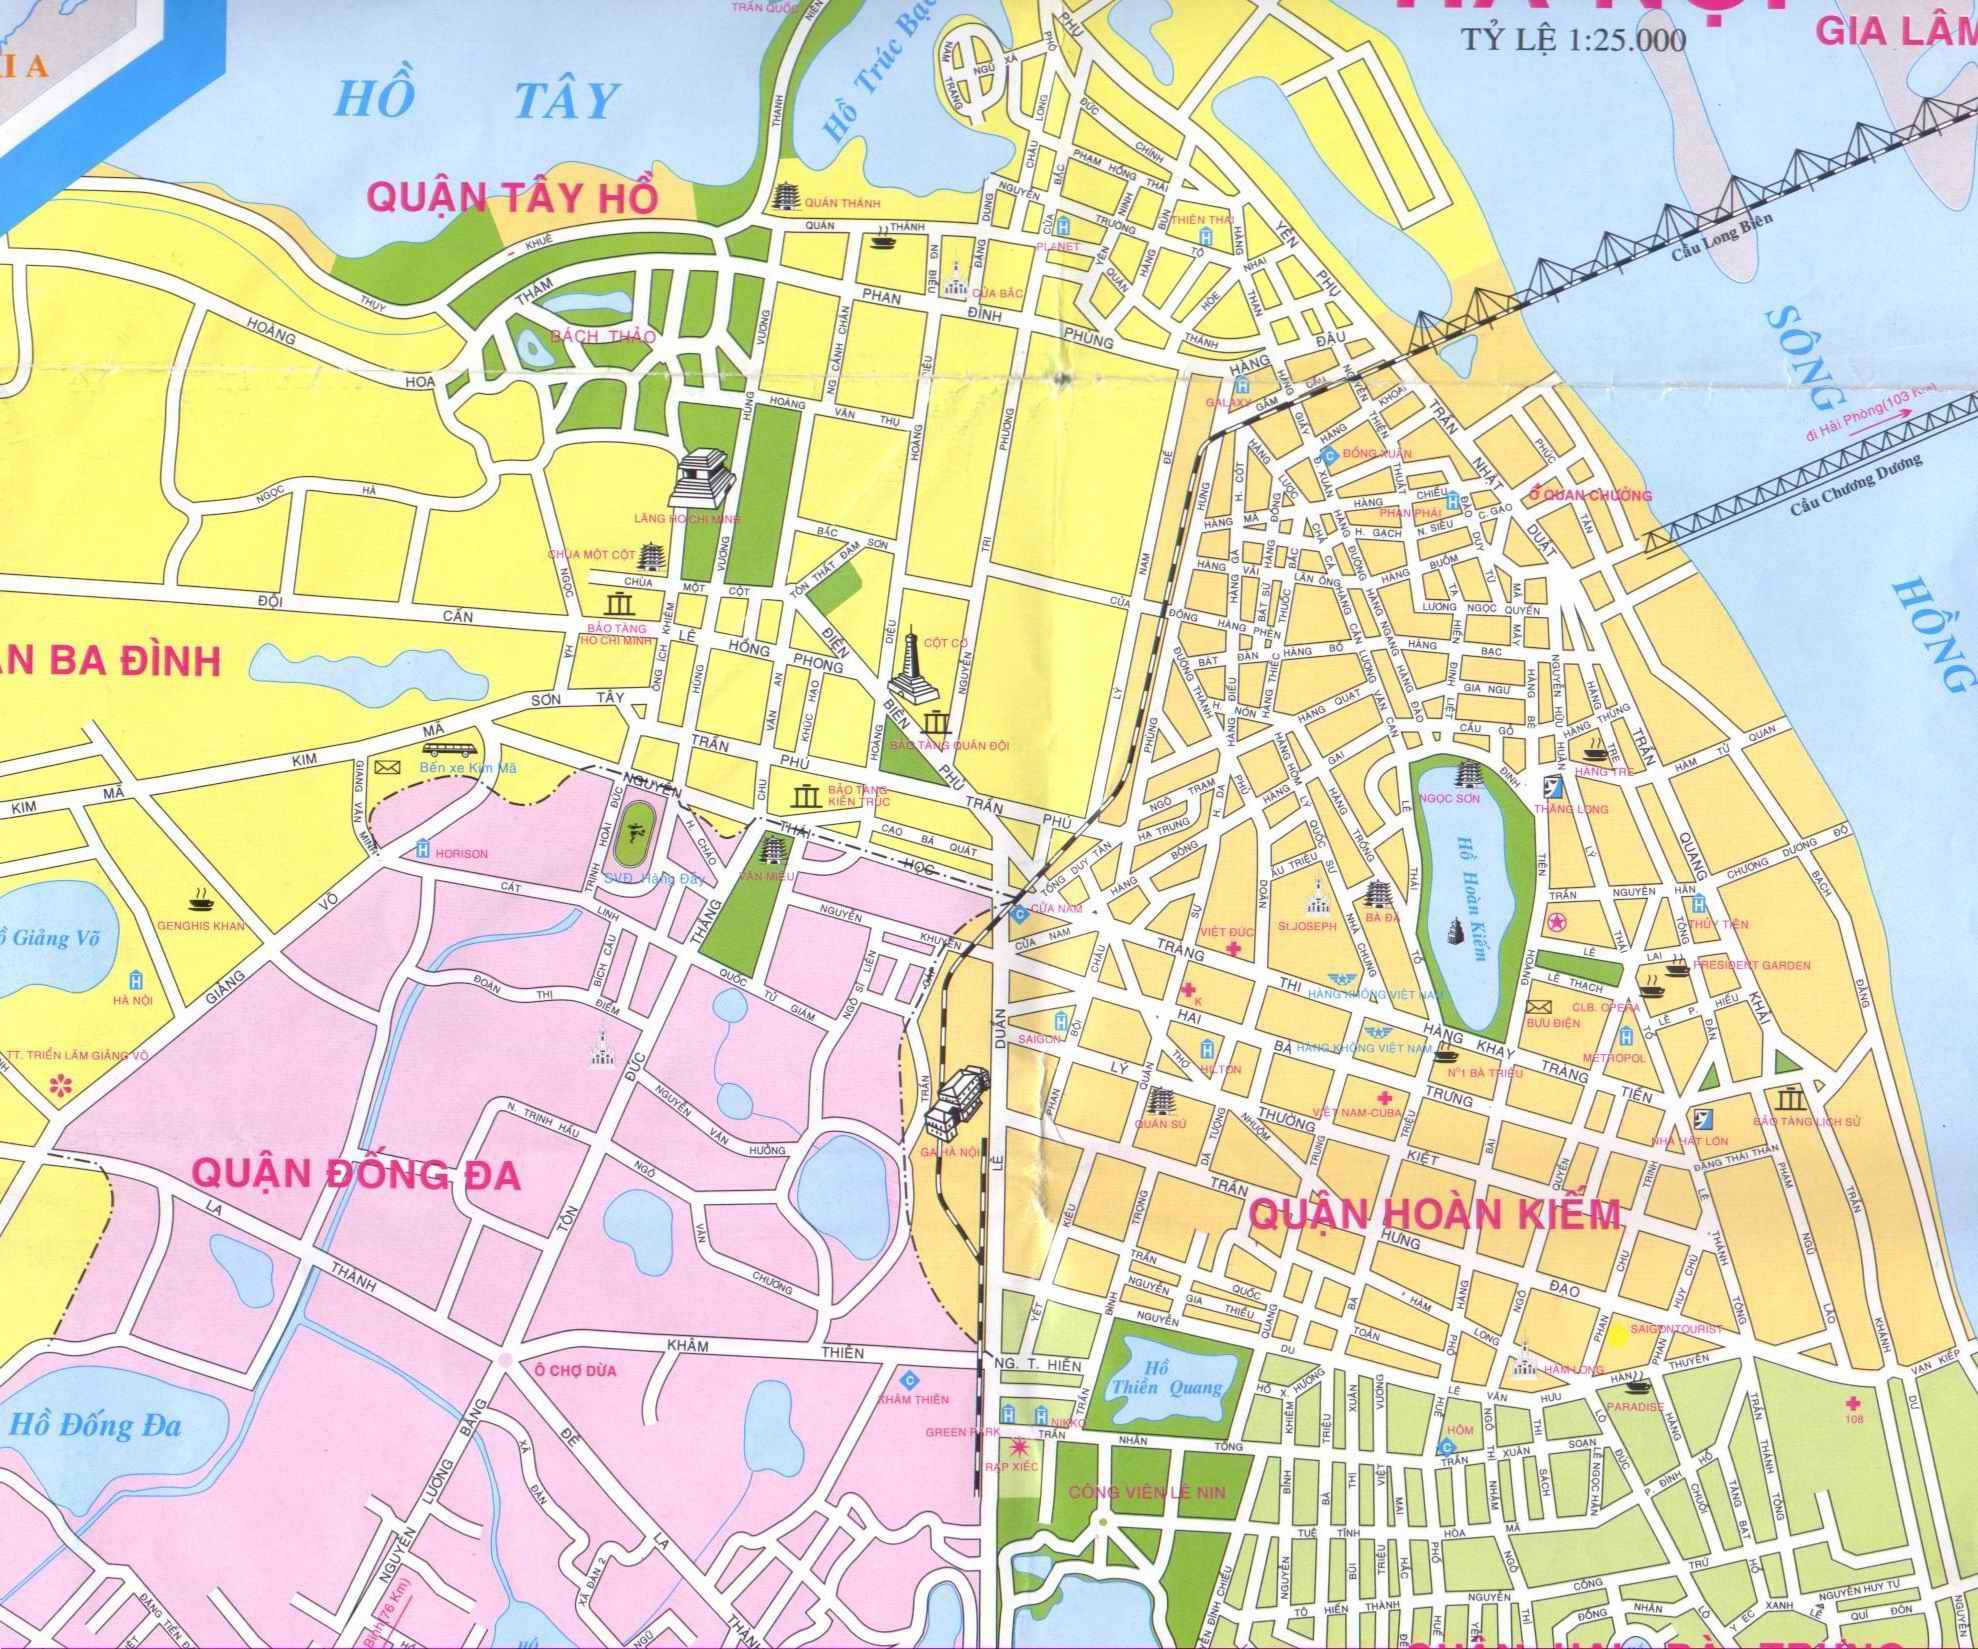 Hanoi ville plan